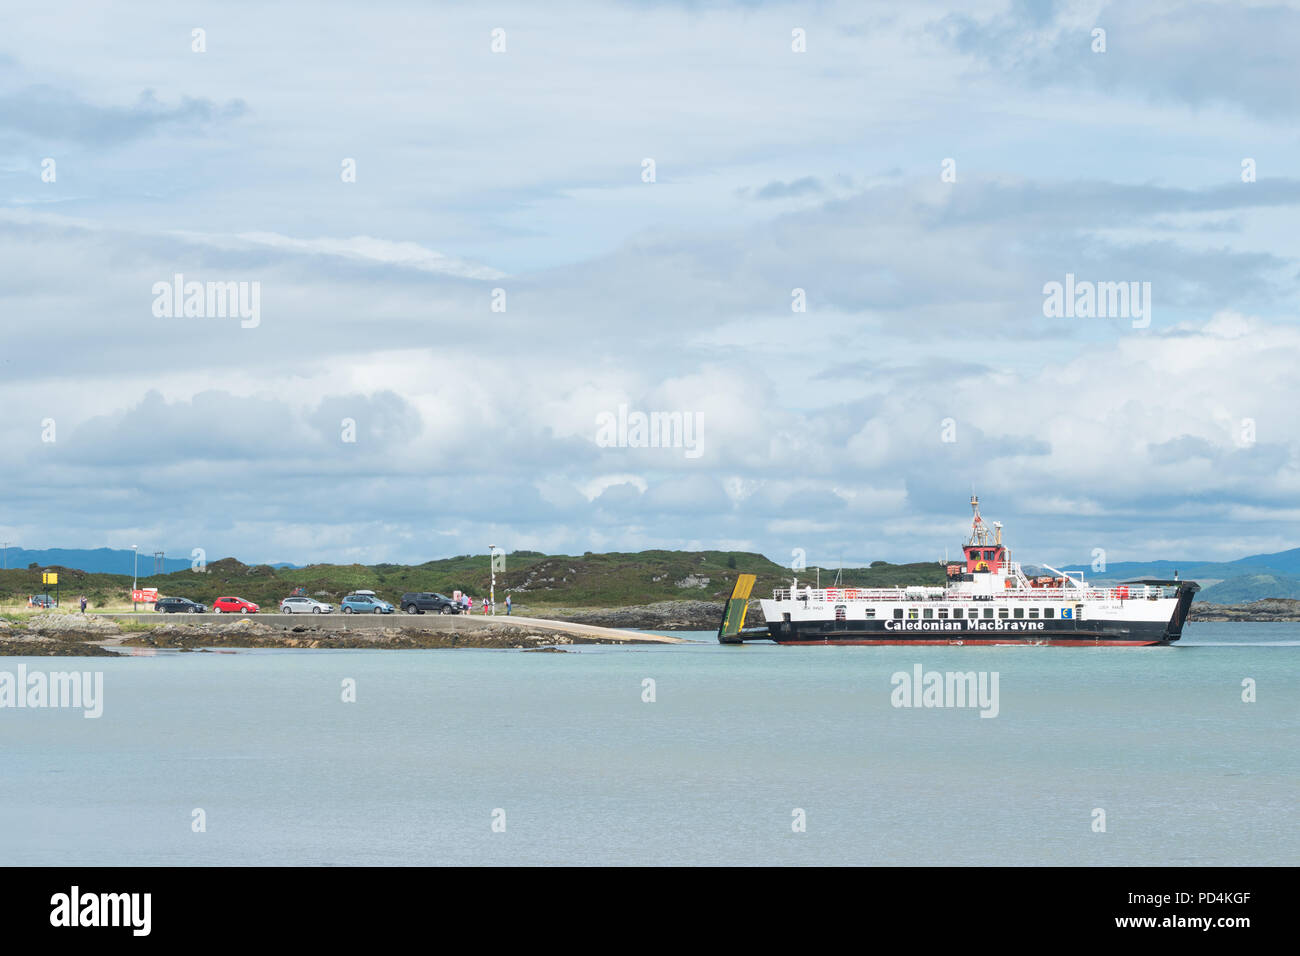 Caledonian MacBrayne Hébrides ferry arrivant à l'île de Gigha, où les véhicules et passagers sont en attente de retour à Kintyre, Ecosse, Royaume-Uni Banque D'Images